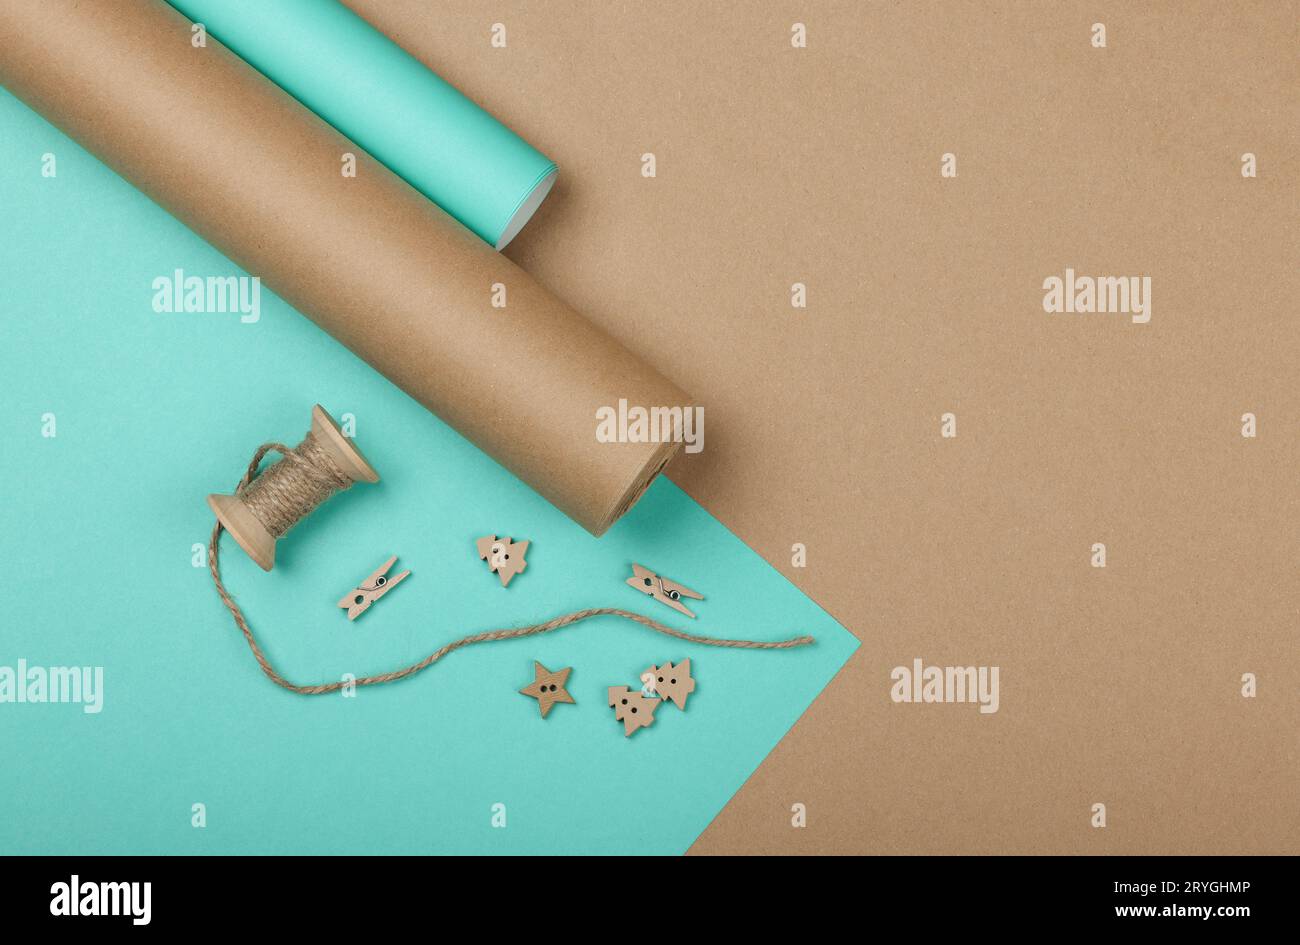 Weihnachtsgeschenke mit blauem und braunem Papier verpacken Stockfoto